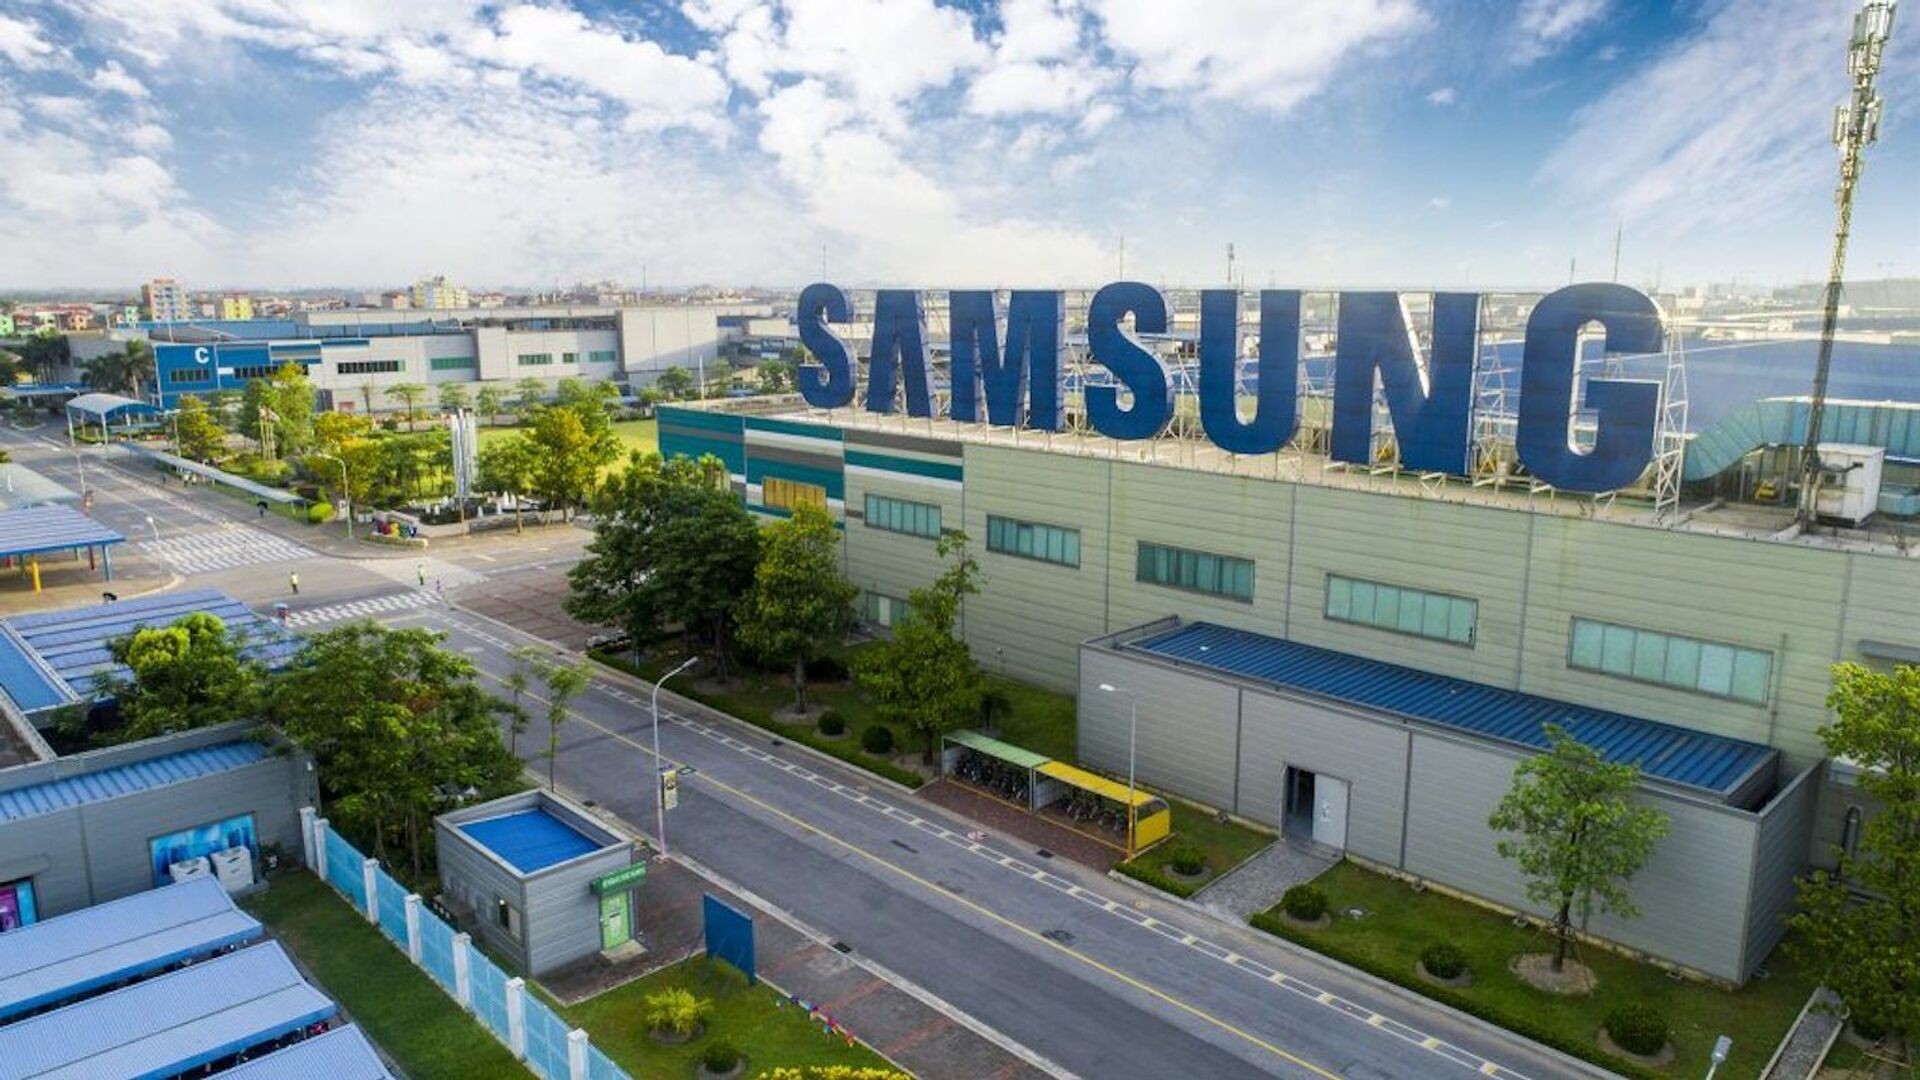 
Tính đến nay, có tổng cộng 250 doanh nghiệp Việt Nam đang là nhà cung cấp của Samsung bao gồm cả cấp 1 và cấp 2, trong đó có đến 52 doanh nghiệp là thuộc cấp 1
